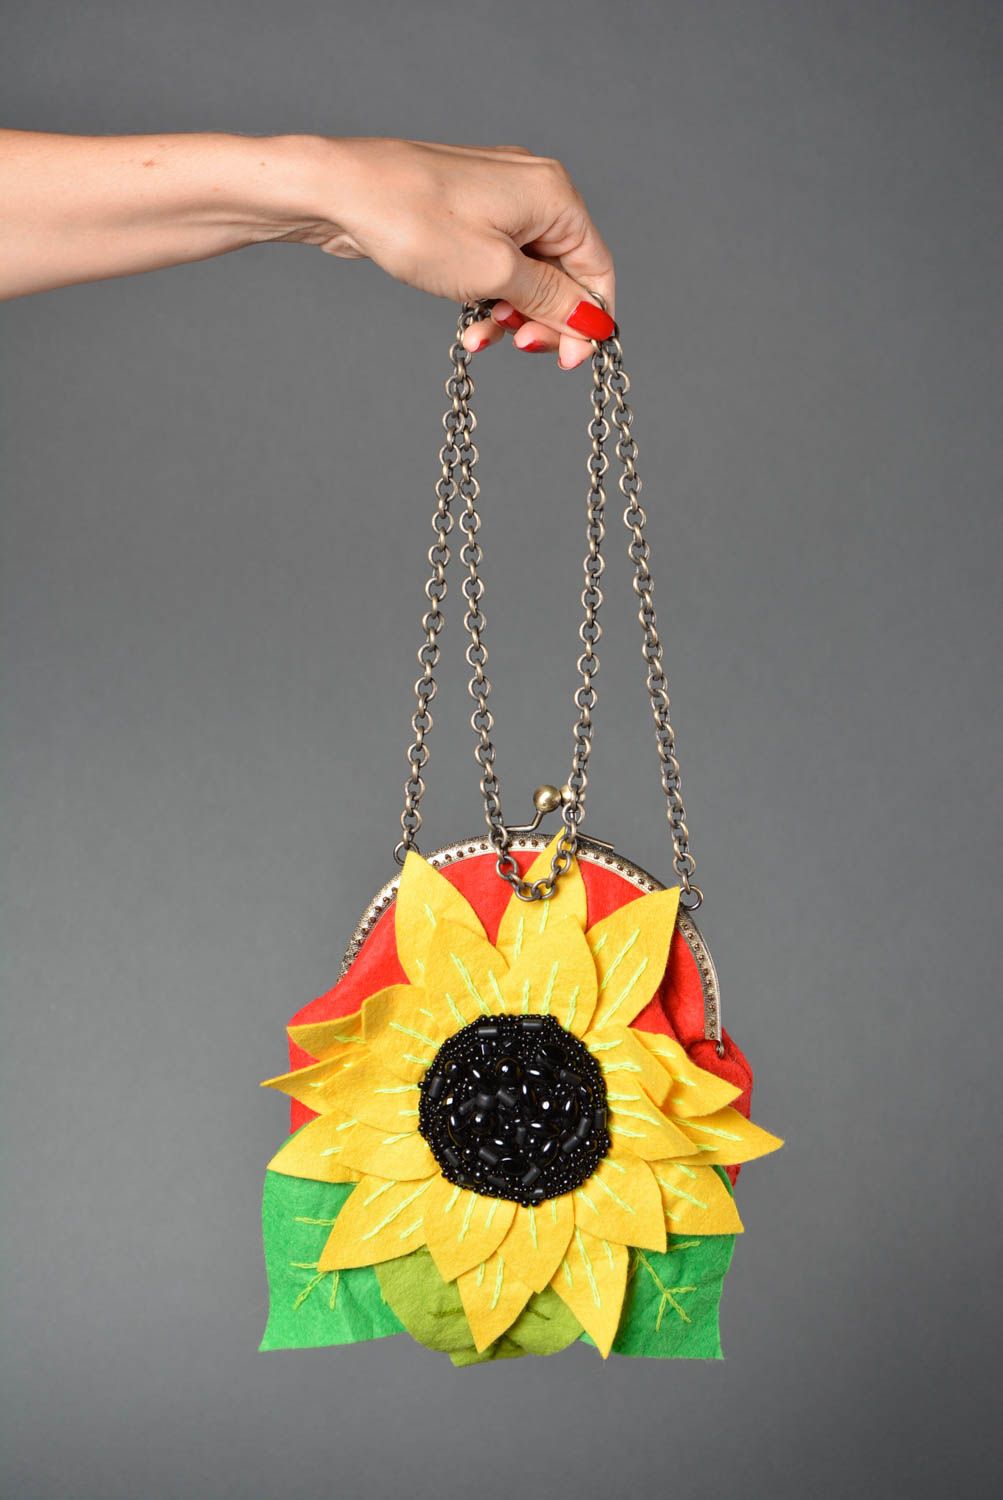 Handmade bag designer bag for women gift ideas felt handbag gift for girls photo 4